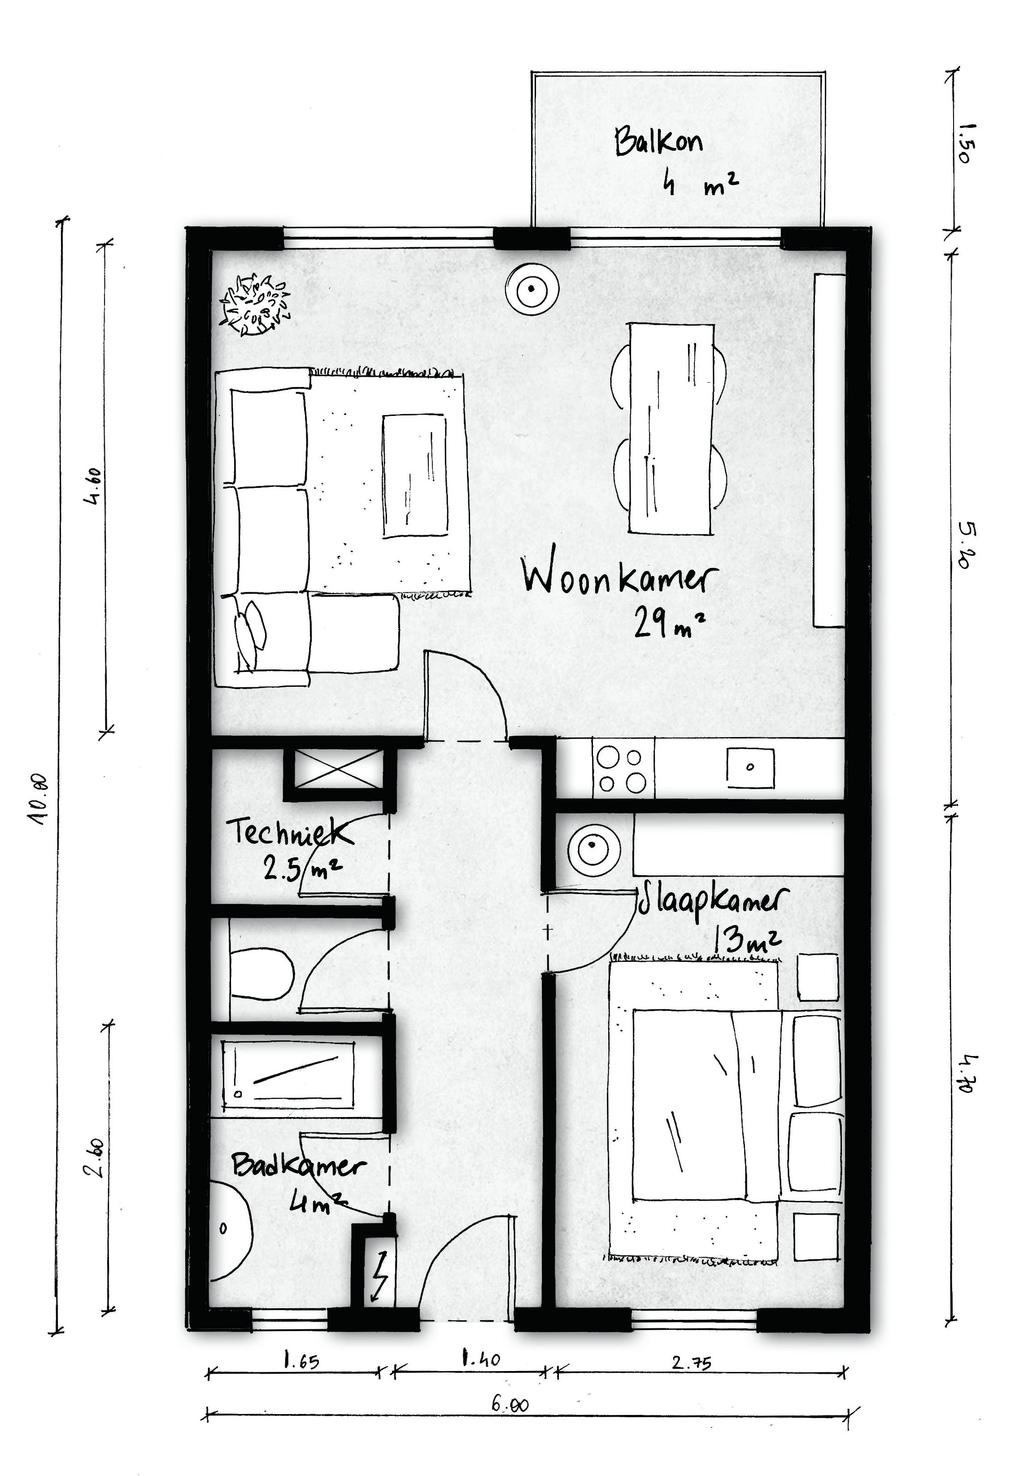 2 kamer appartement Huurprijs indicatie: 595,- (prijspeil 2019). De appartementen in de U-blokken zijn één meter minder diep.